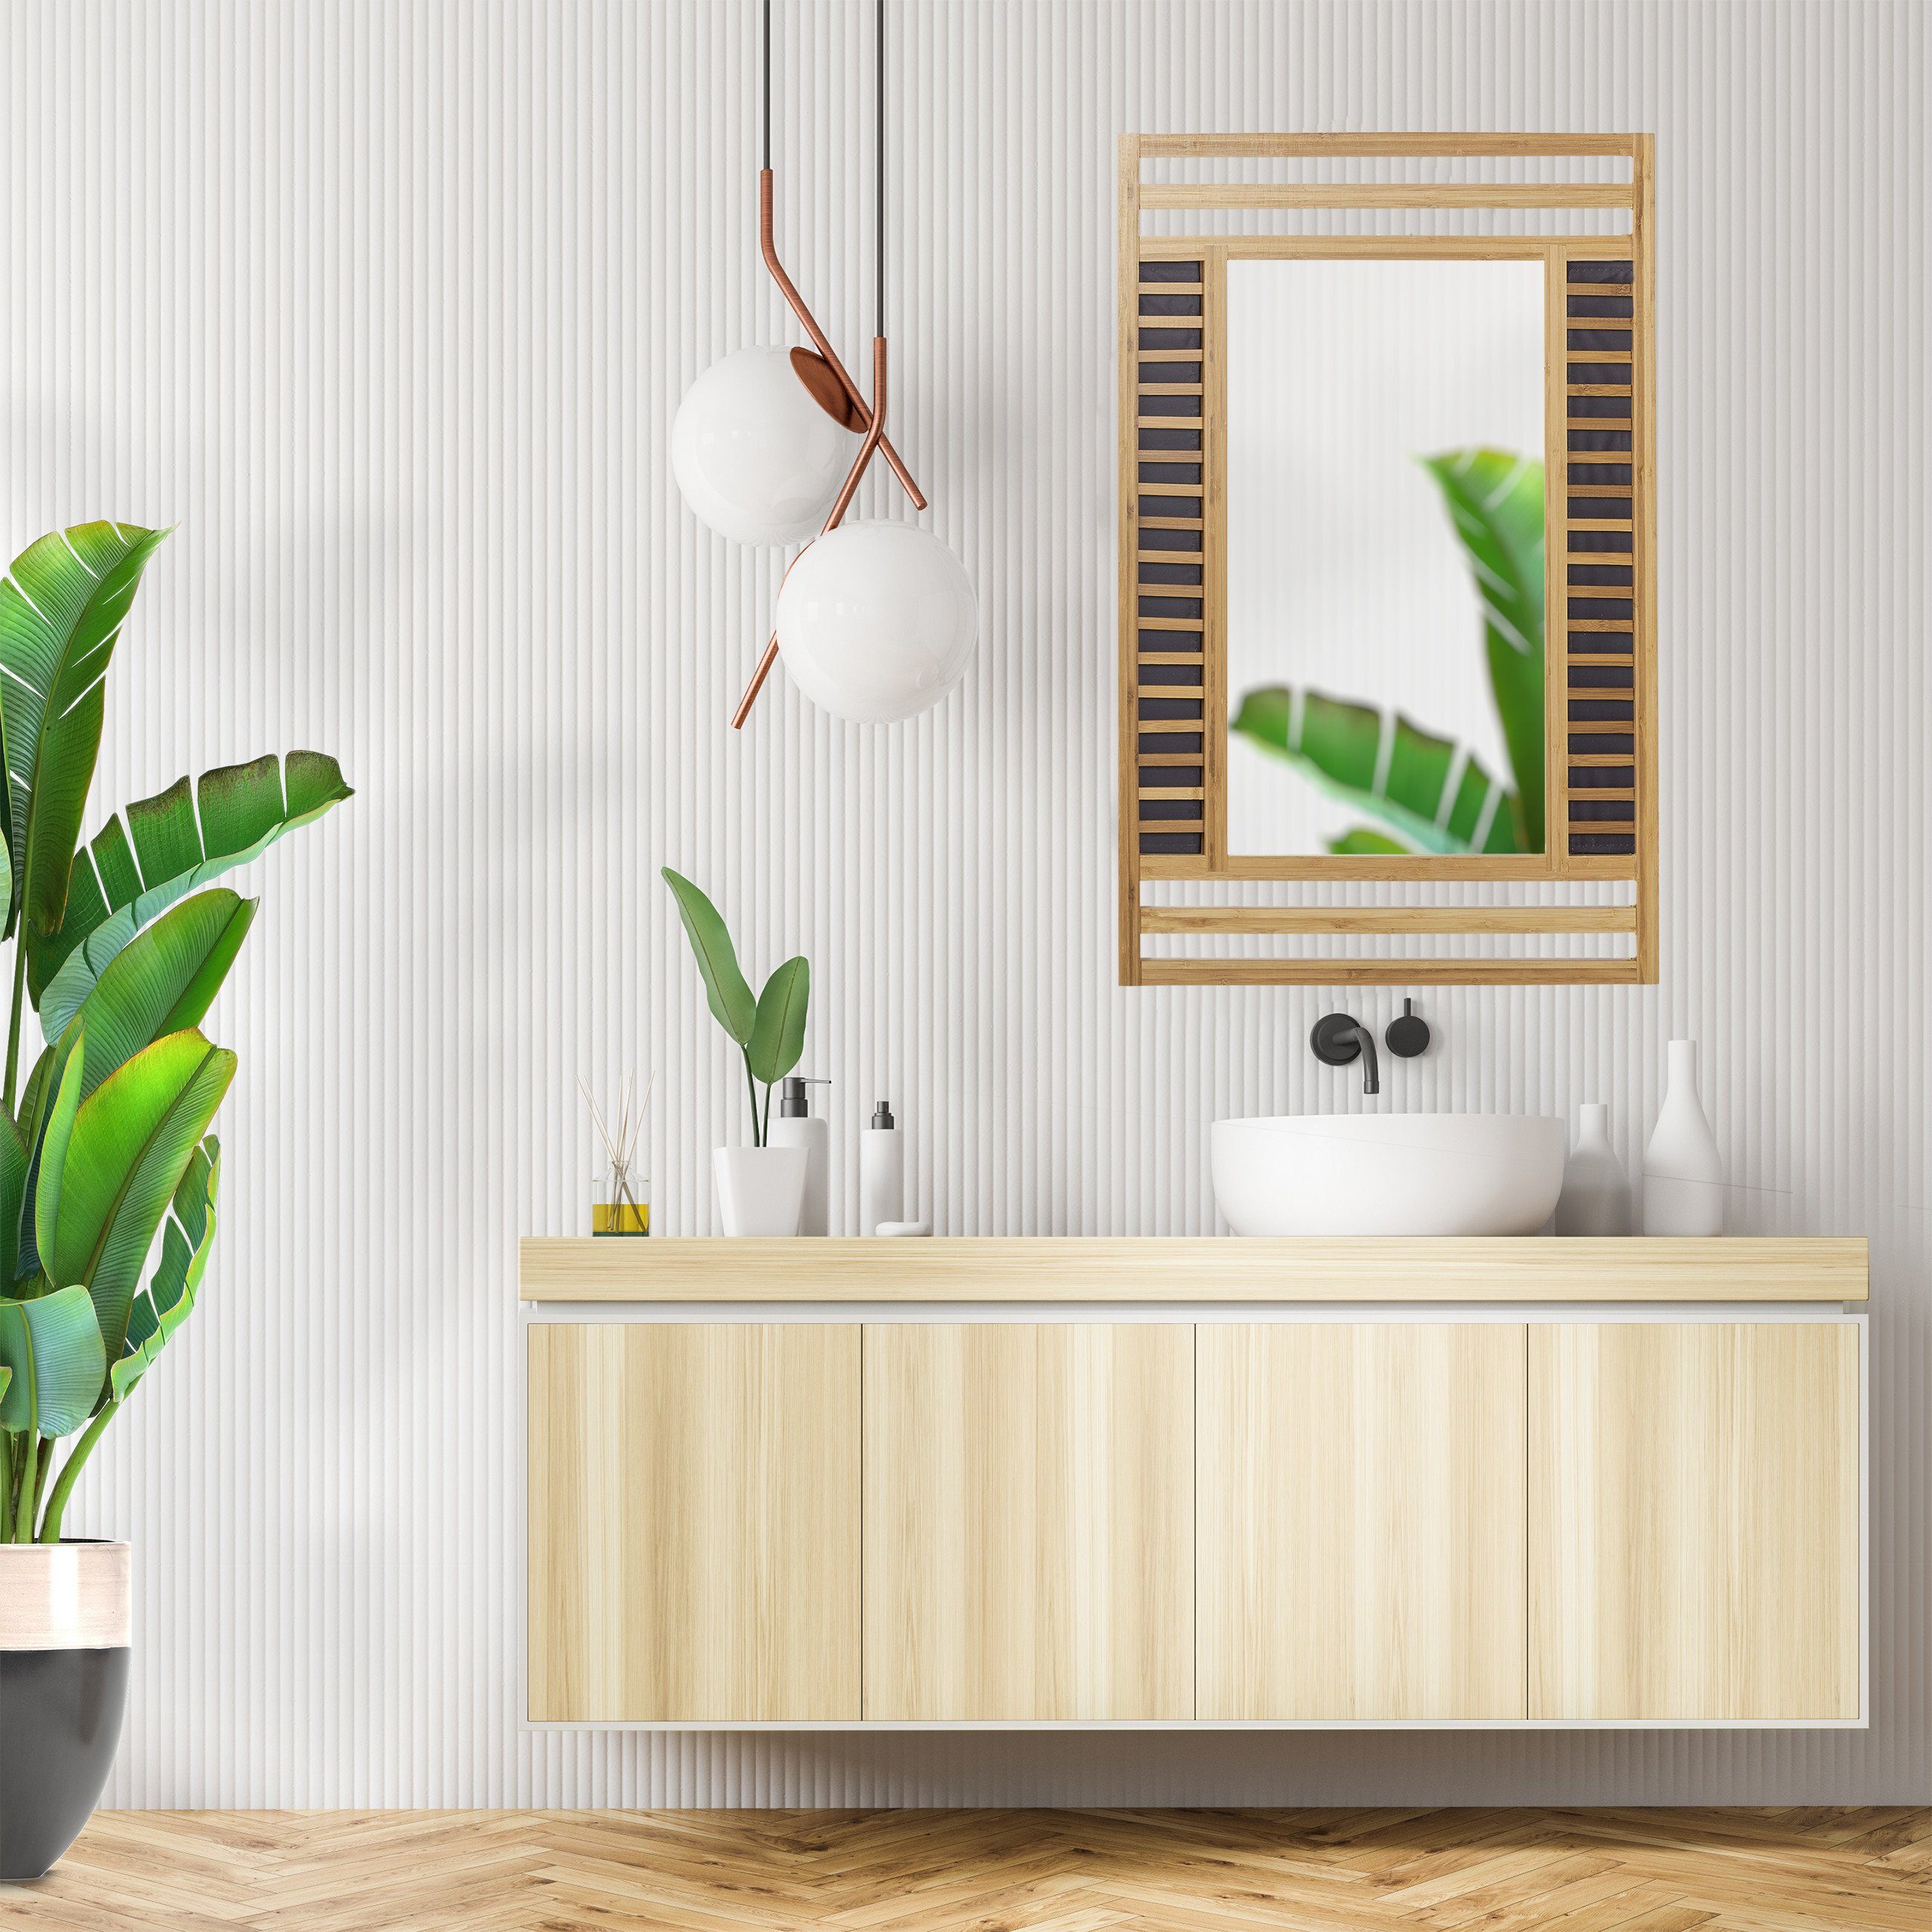 mit Rahmen Spiegel dekorativem Spiegel Bambus relaxdays